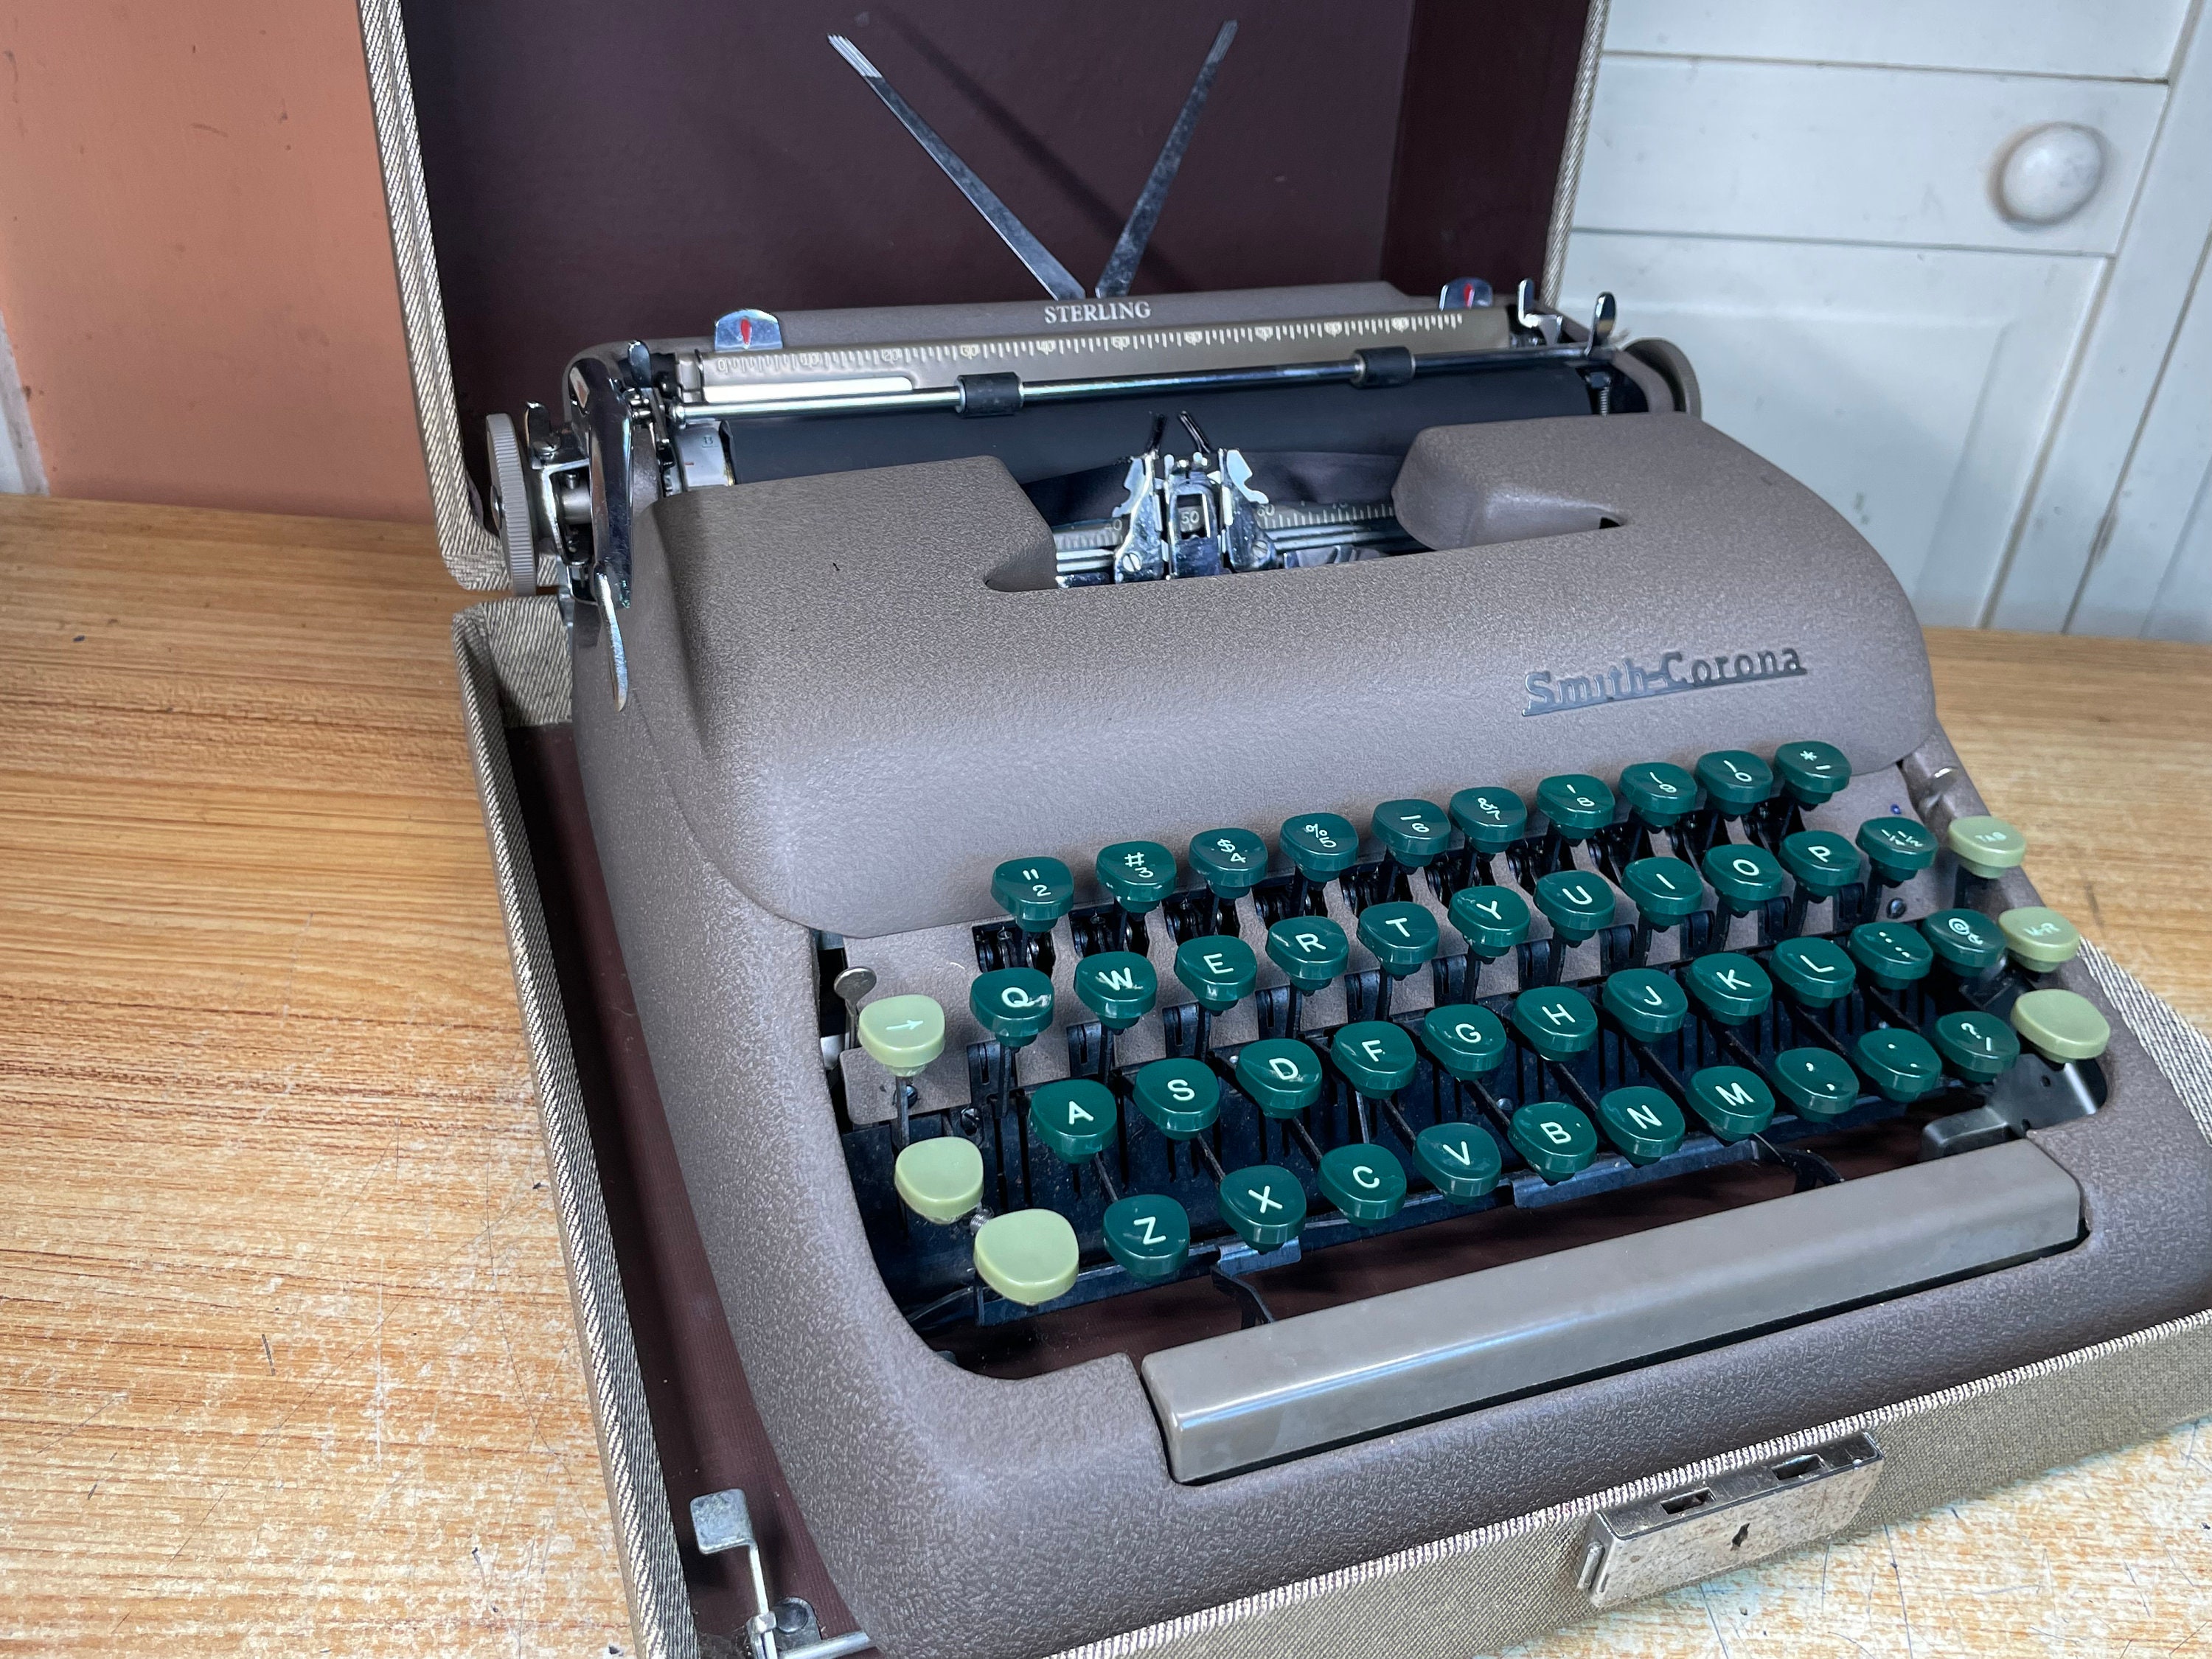 SEA Typewriter Jumpsuit